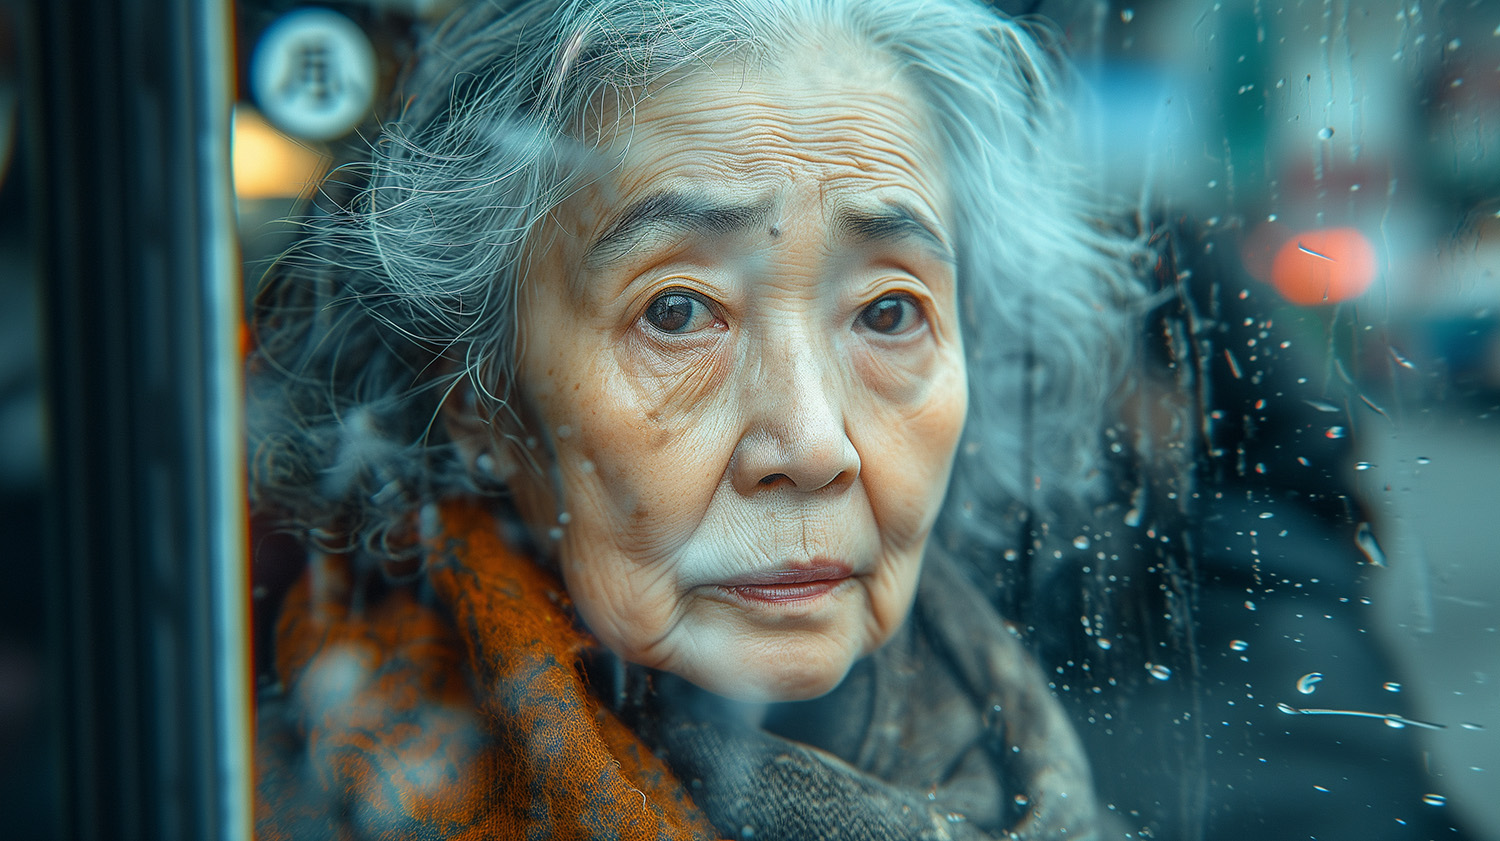 Eine alte asiatische Frau schaut direkt nach vorne durch eine Fensterscheibe, die mit Regentropfen bedeckt ist. Ihr Gesicht ist von Falten gezeichnet und sie hat mittellange graue Haare.